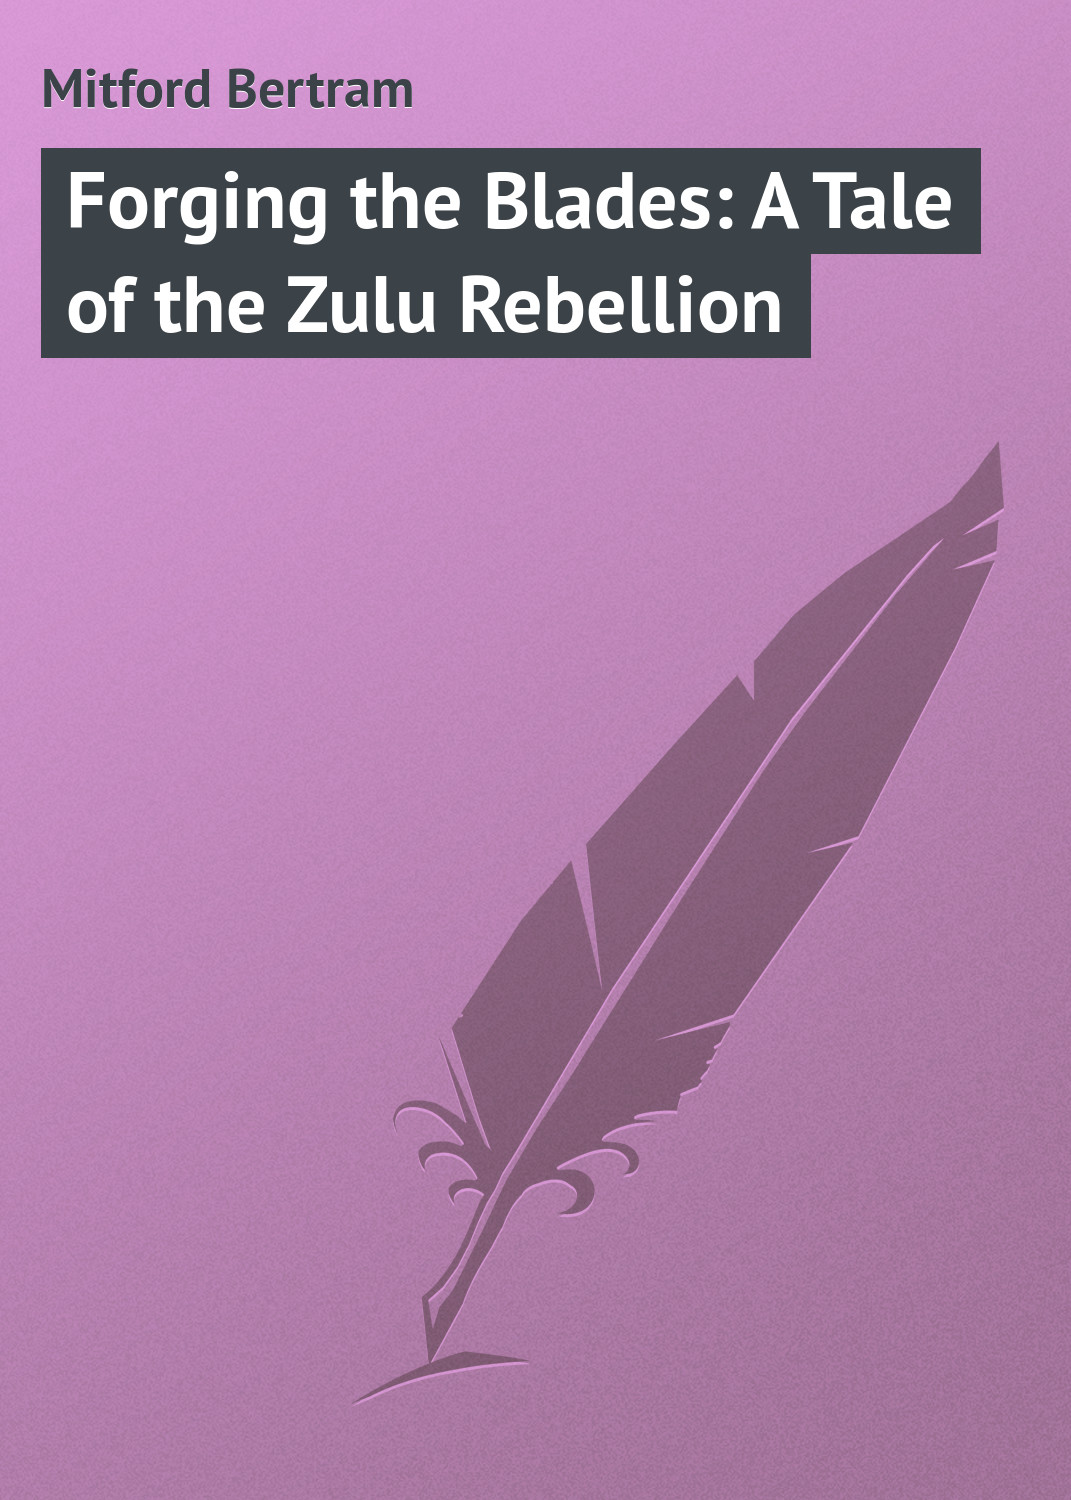 Книга Forging the Blades: A Tale of the Zulu Rebellion из серии , созданная Bertram Mitford, может относится к жанру Зарубежная классика. Стоимость электронной книги Forging the Blades: A Tale of the Zulu Rebellion с идентификатором 23144259 составляет 5.99 руб.